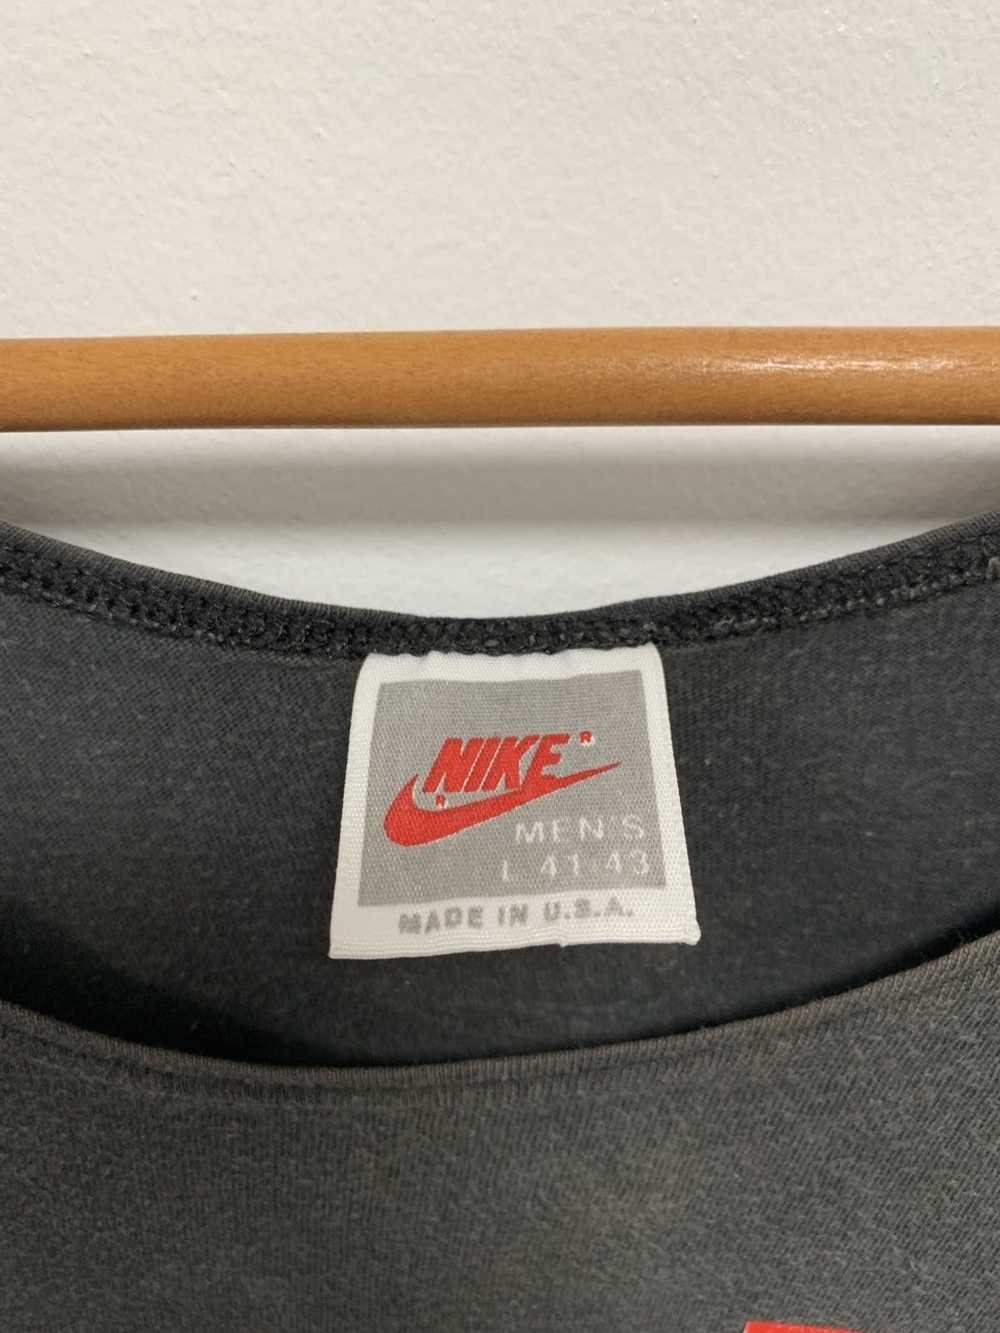 Jordan Brand × Nike × Vintage Vintage Nike air Jo… - image 5